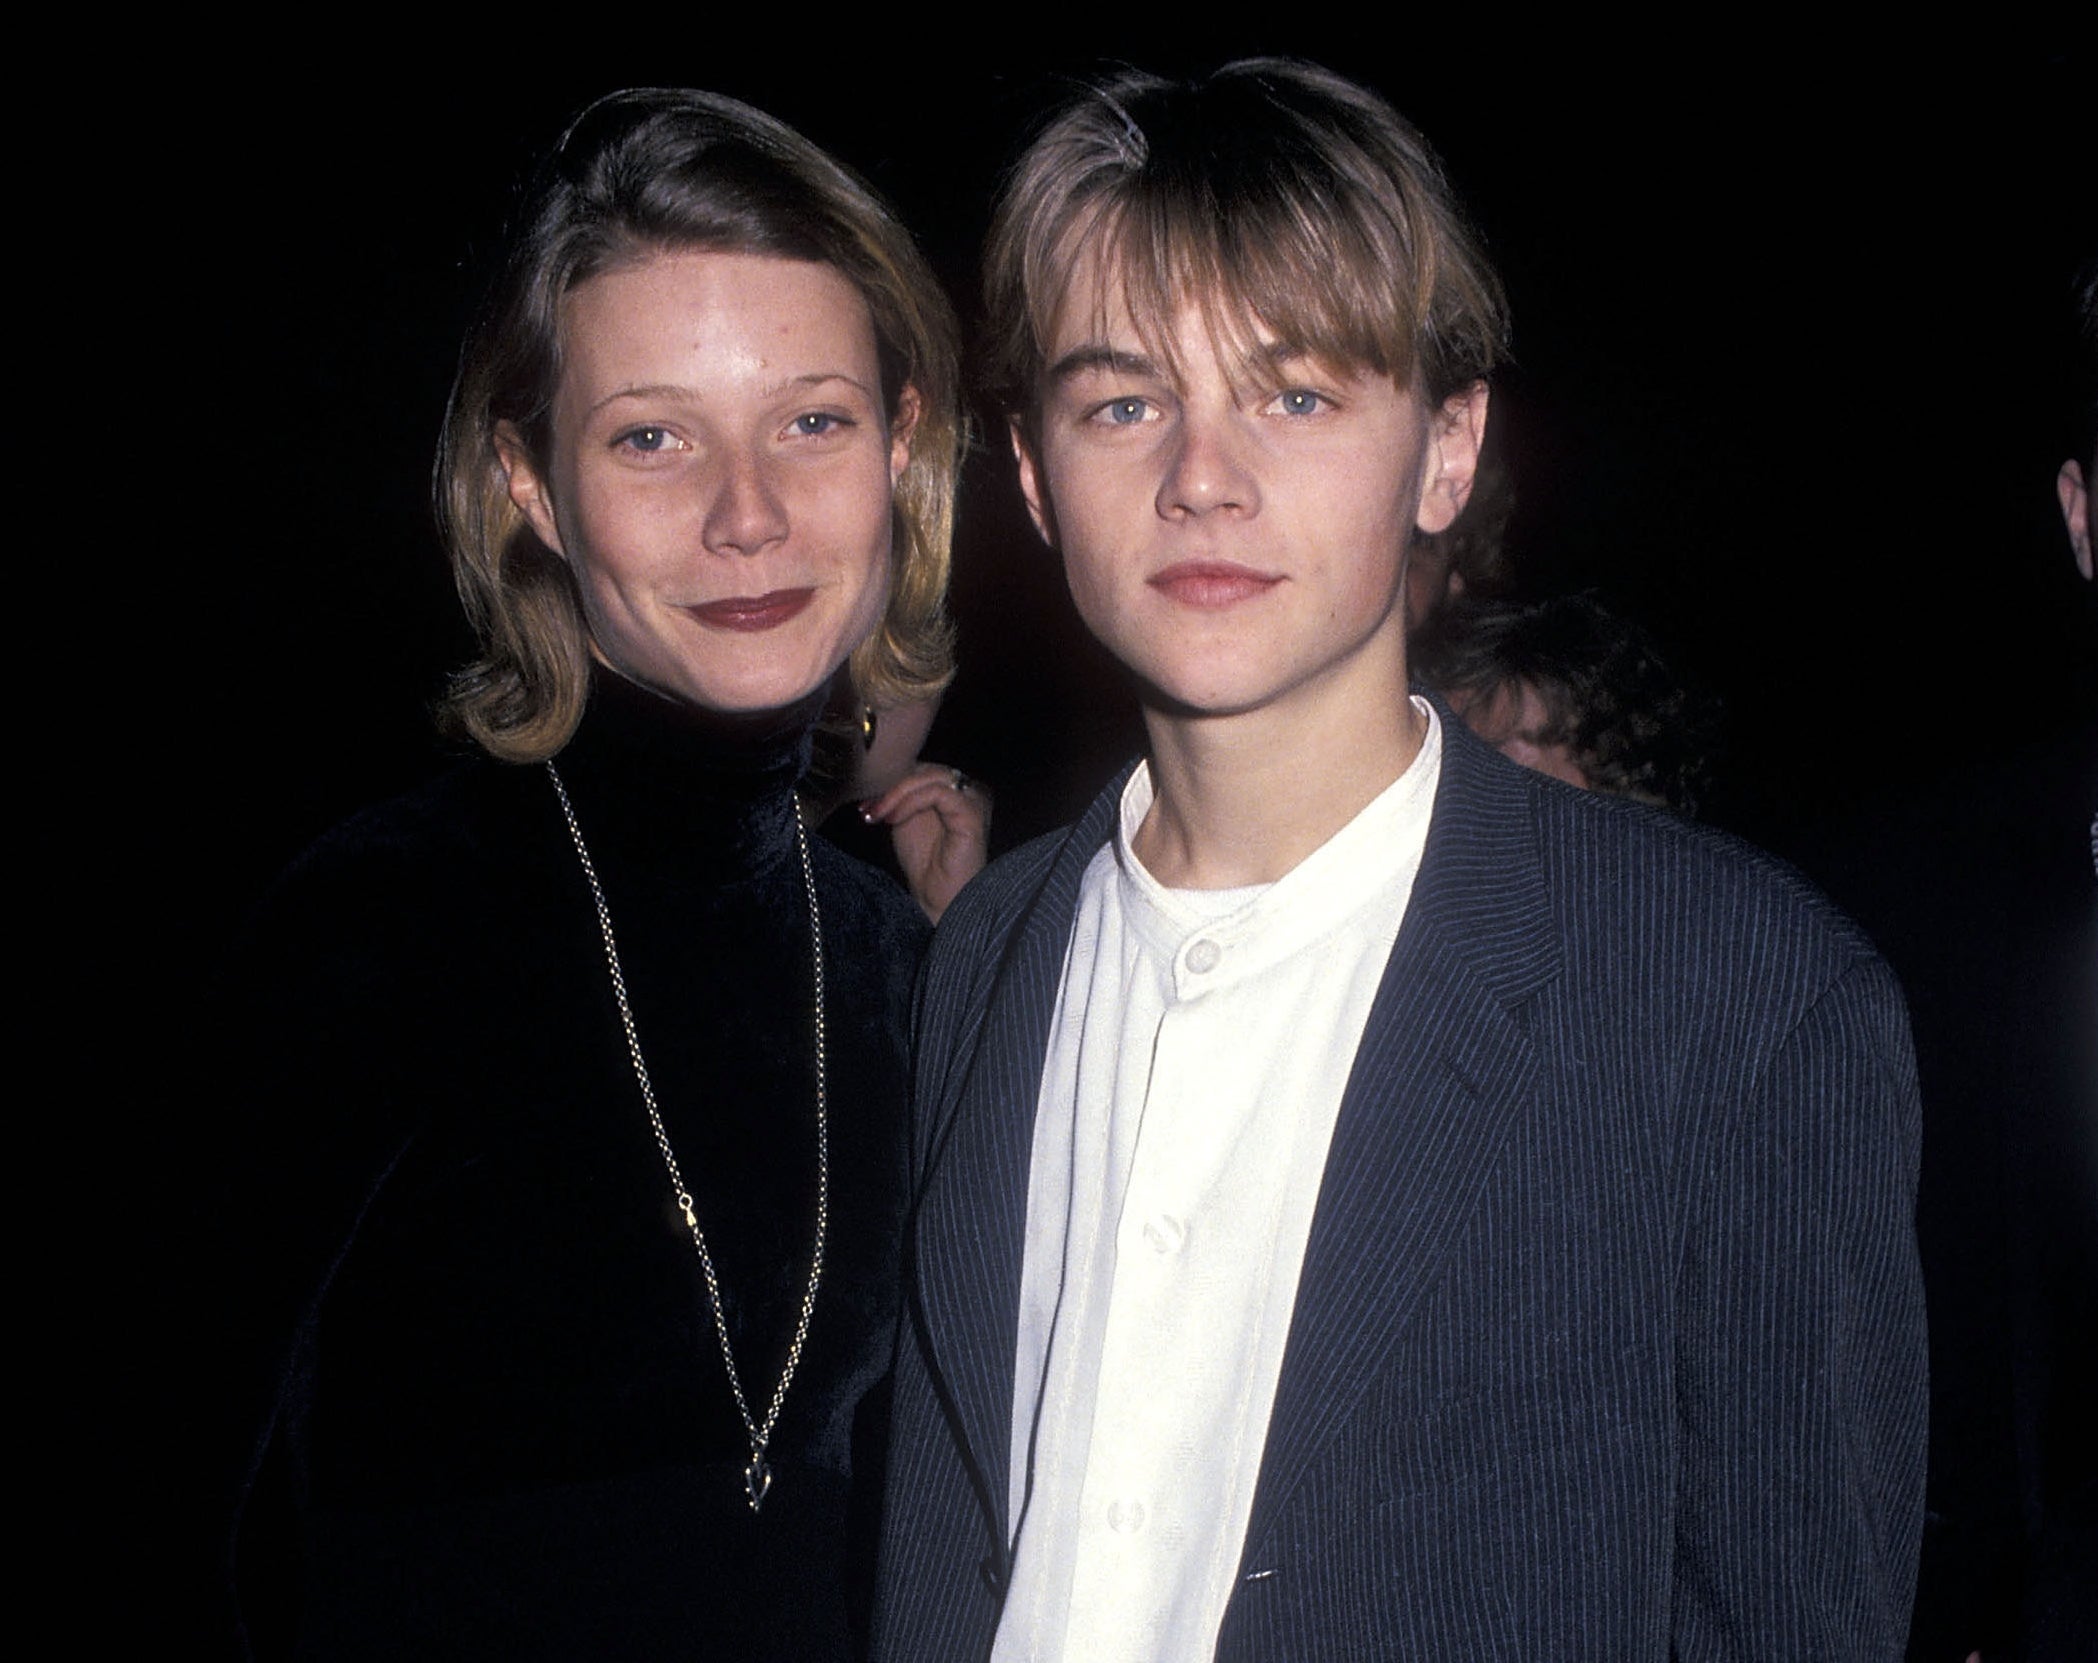 A closeup of young Gwyneth and Leonardo